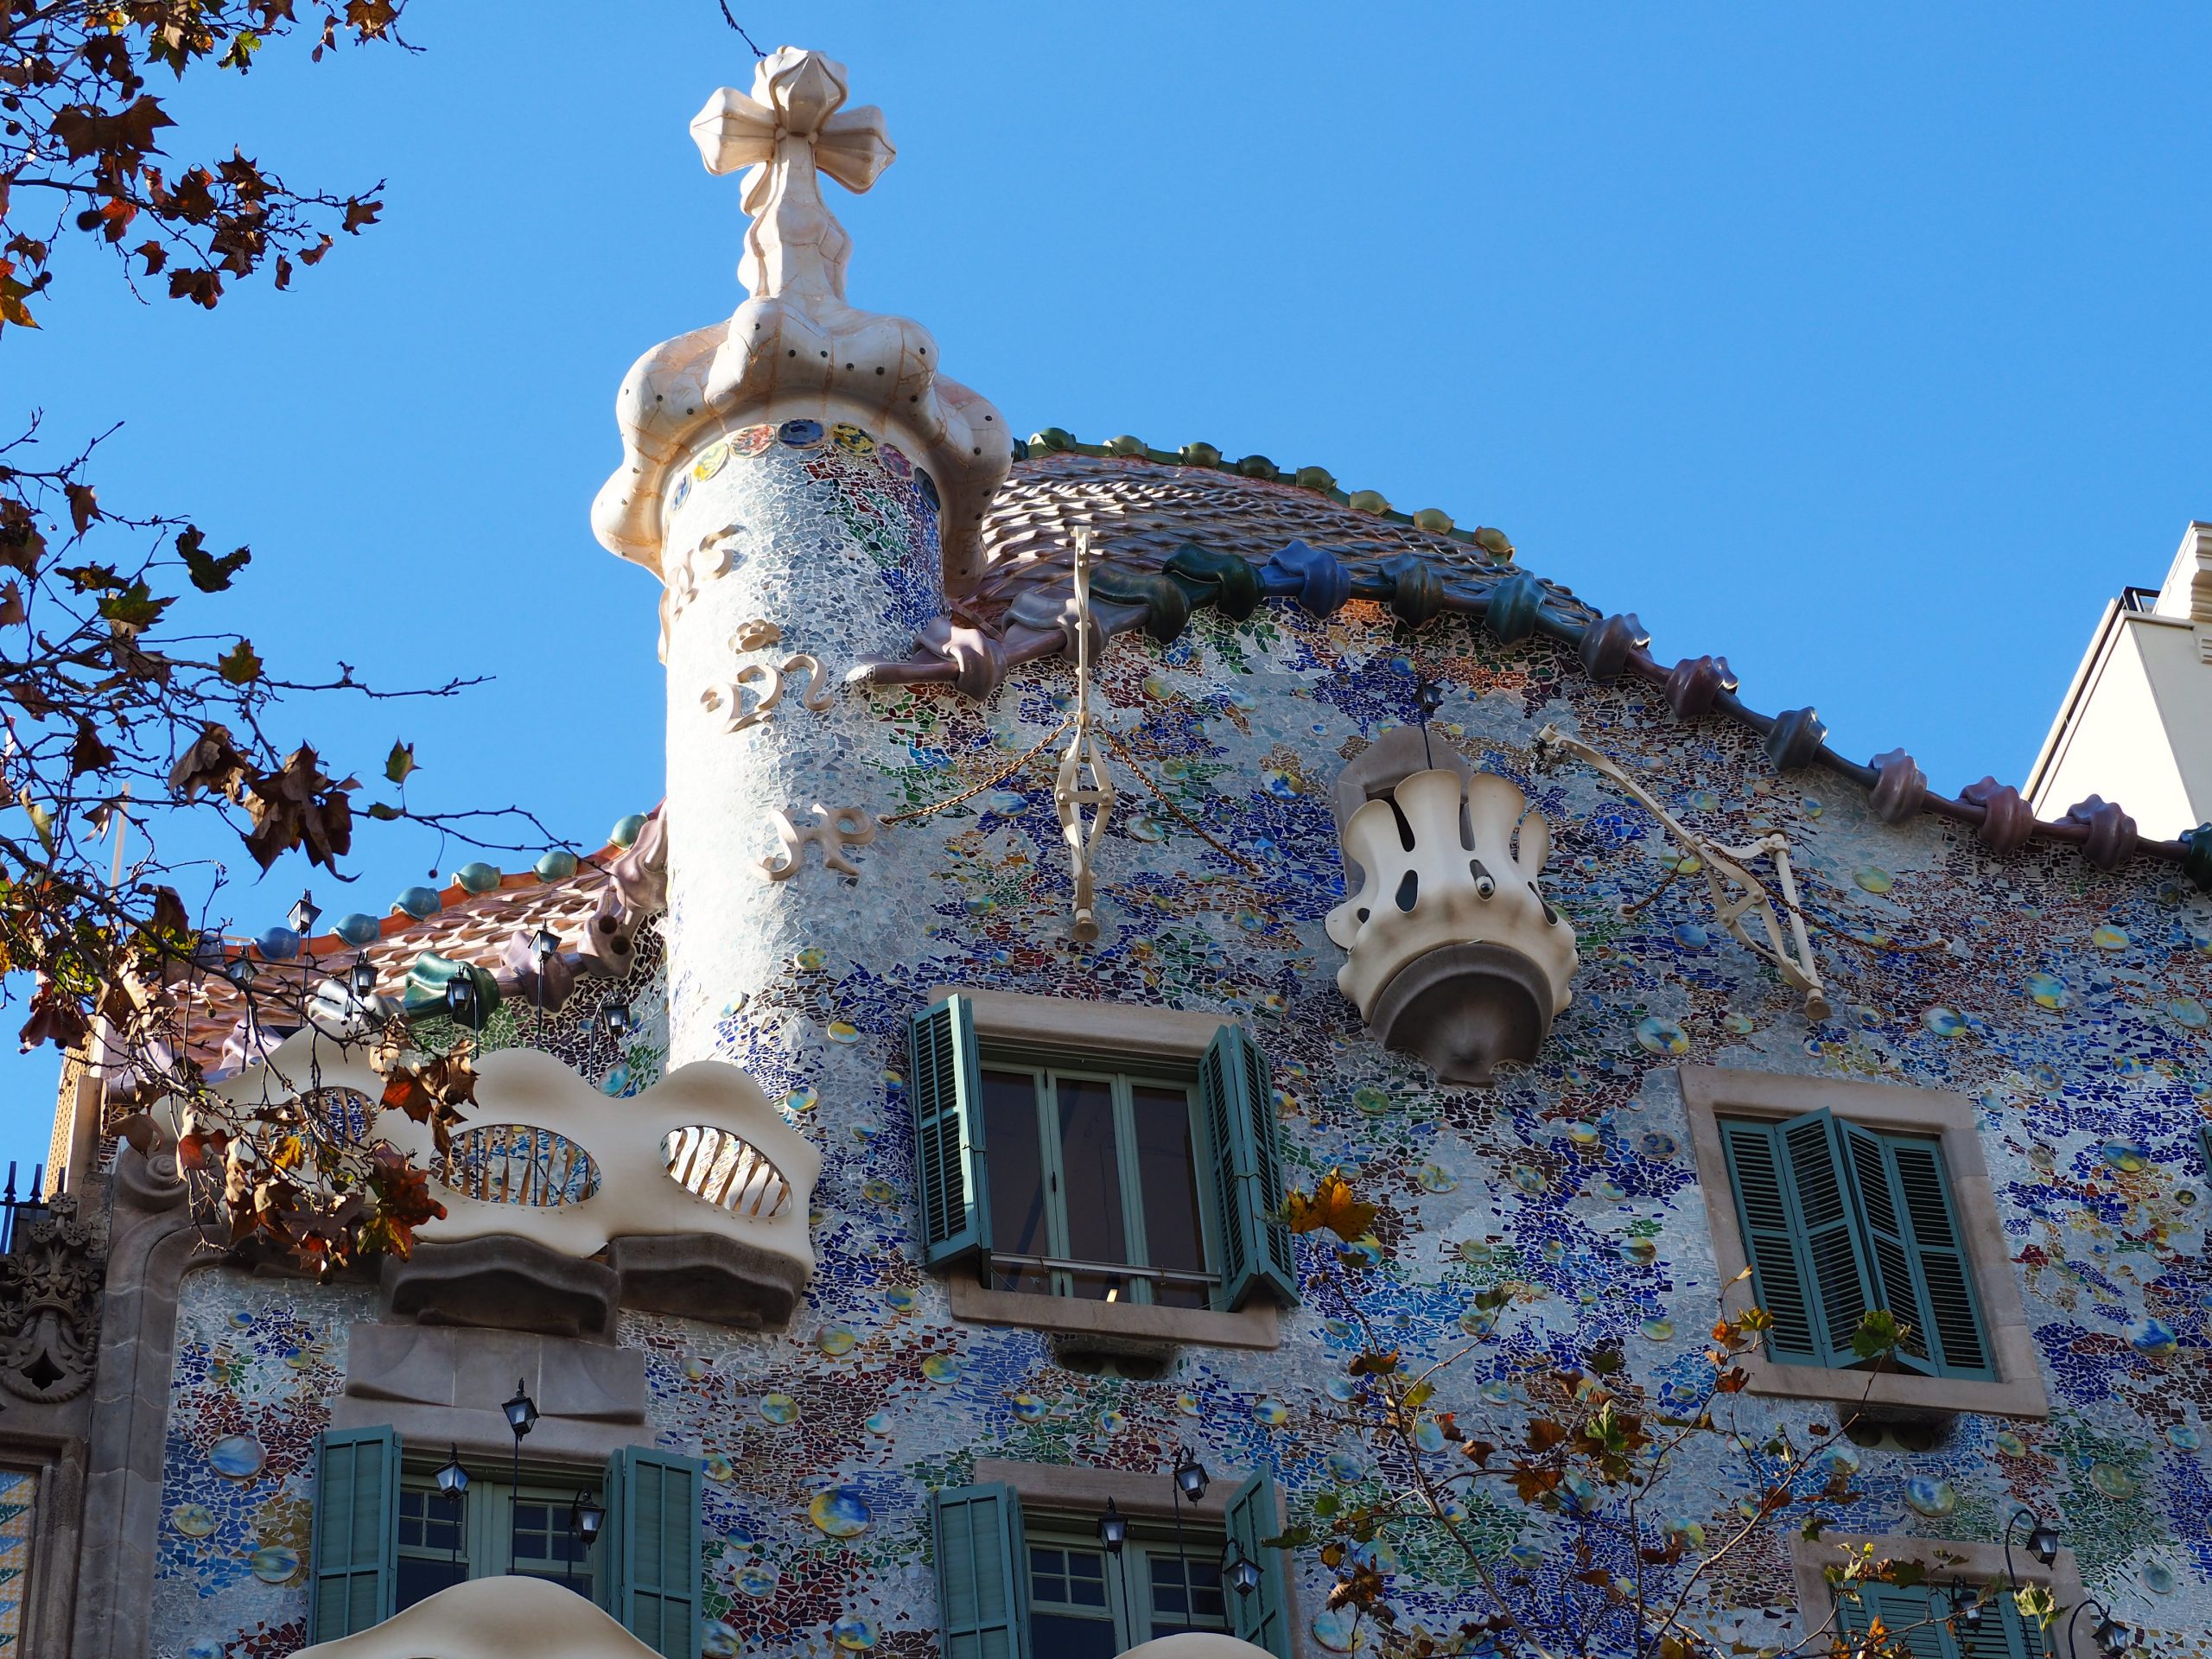 Tetto della casa Batlló, Passeig de Gràcia, tour di Barcellona.